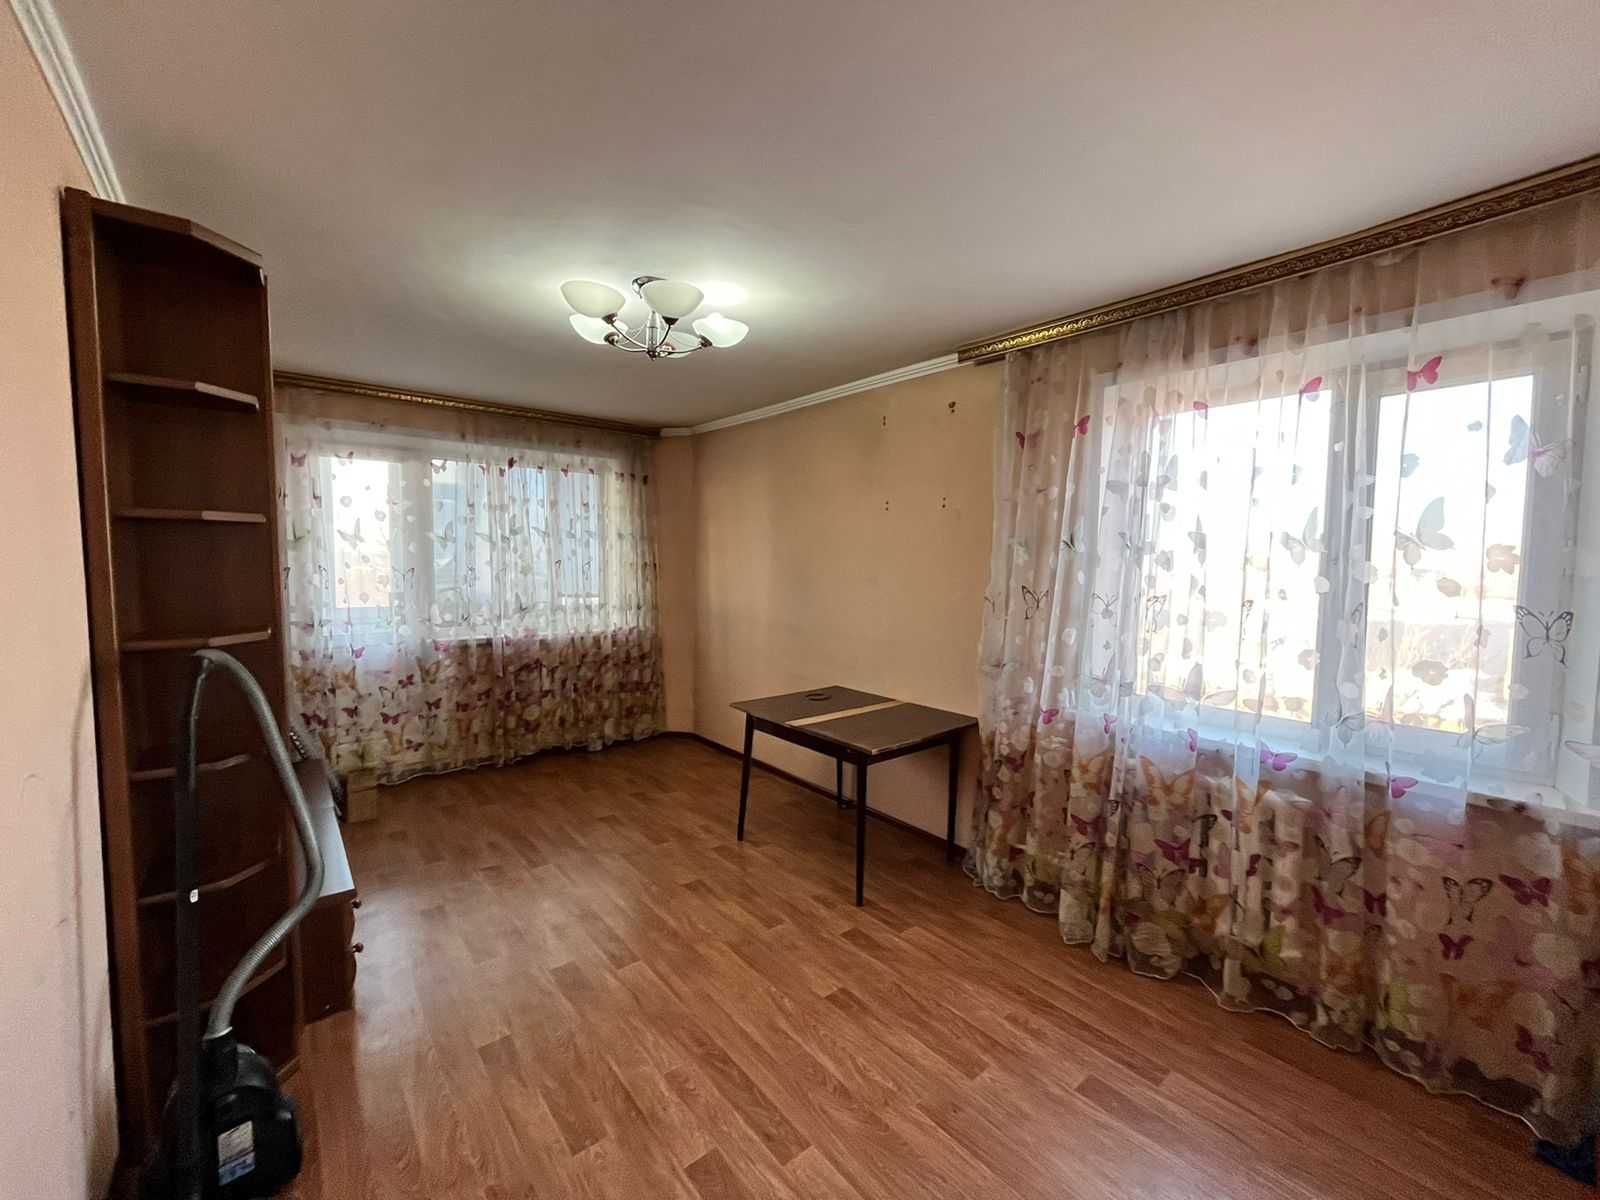 Продается 3-х комн. квартира в городе по ул. Абдирова